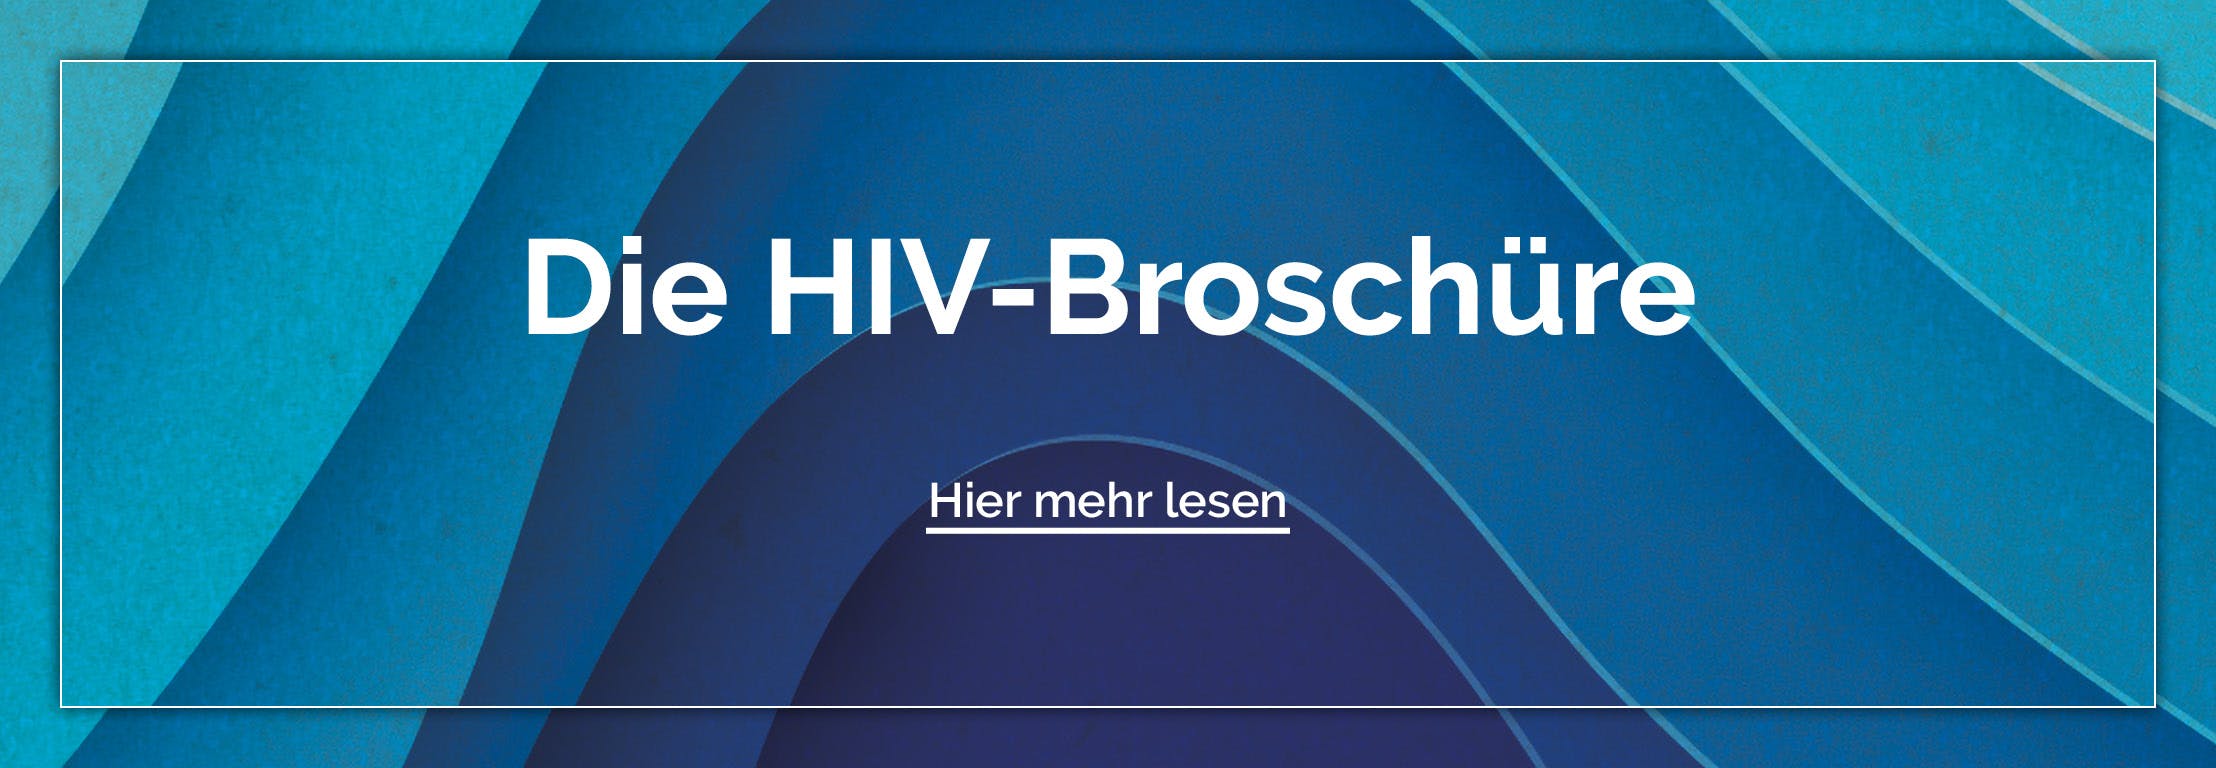 Die HIV Broschüre bietet Wissen rund um HIV von Übertragung bis zur Therapie und dem modernen Leben mit HIV